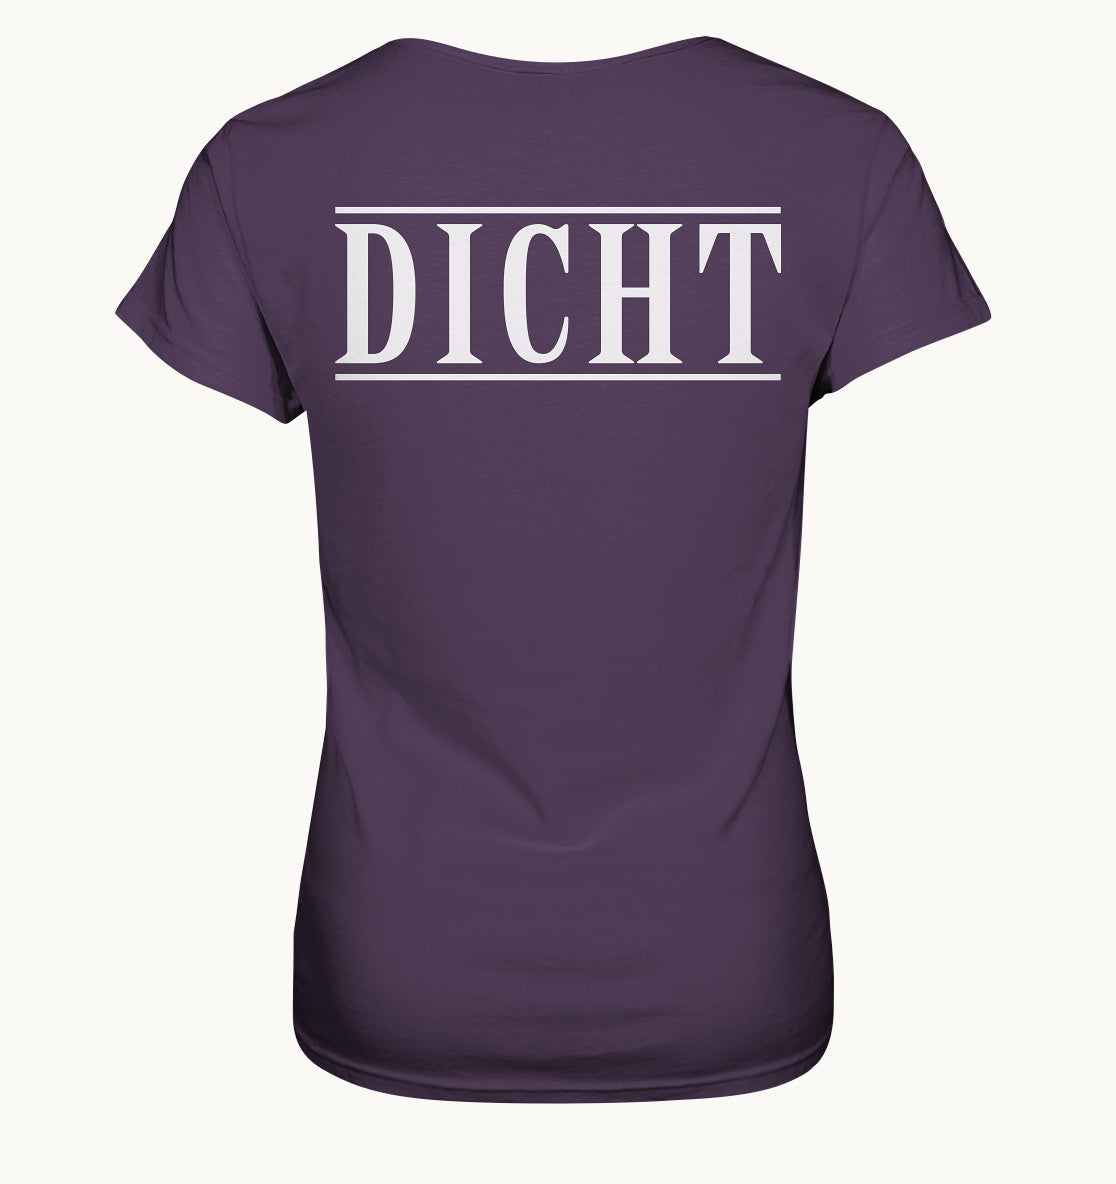 HACKE DICHT Vorne + hinten Druck - Frauen Shirt - Baufun Shop